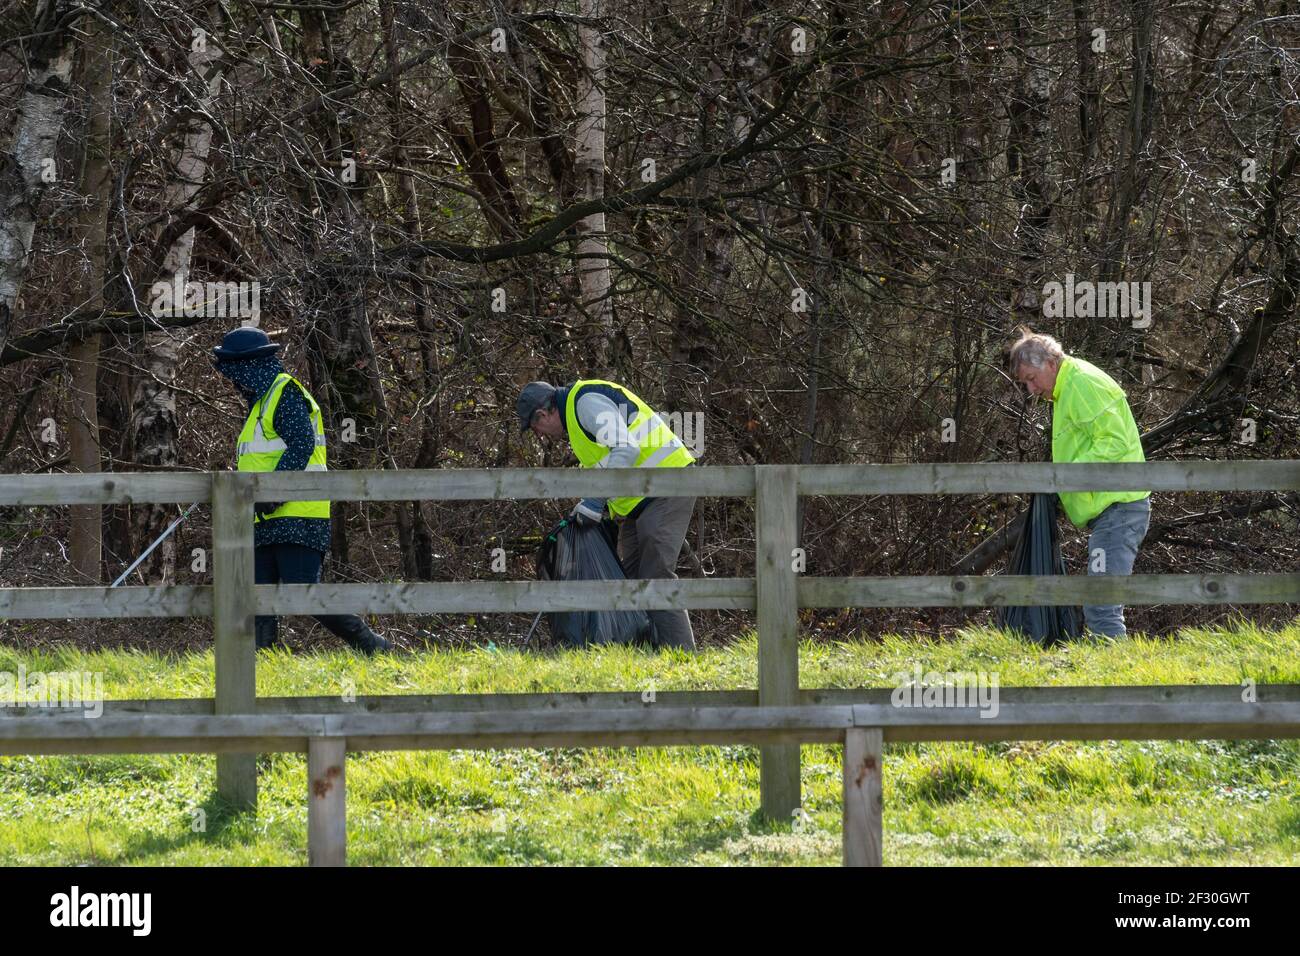 Los voluntarios pican basura en el campo usando ropa de alta visibilidad, Reino Unido. Enyesando verjas al borde de la carretera. Foto de stock